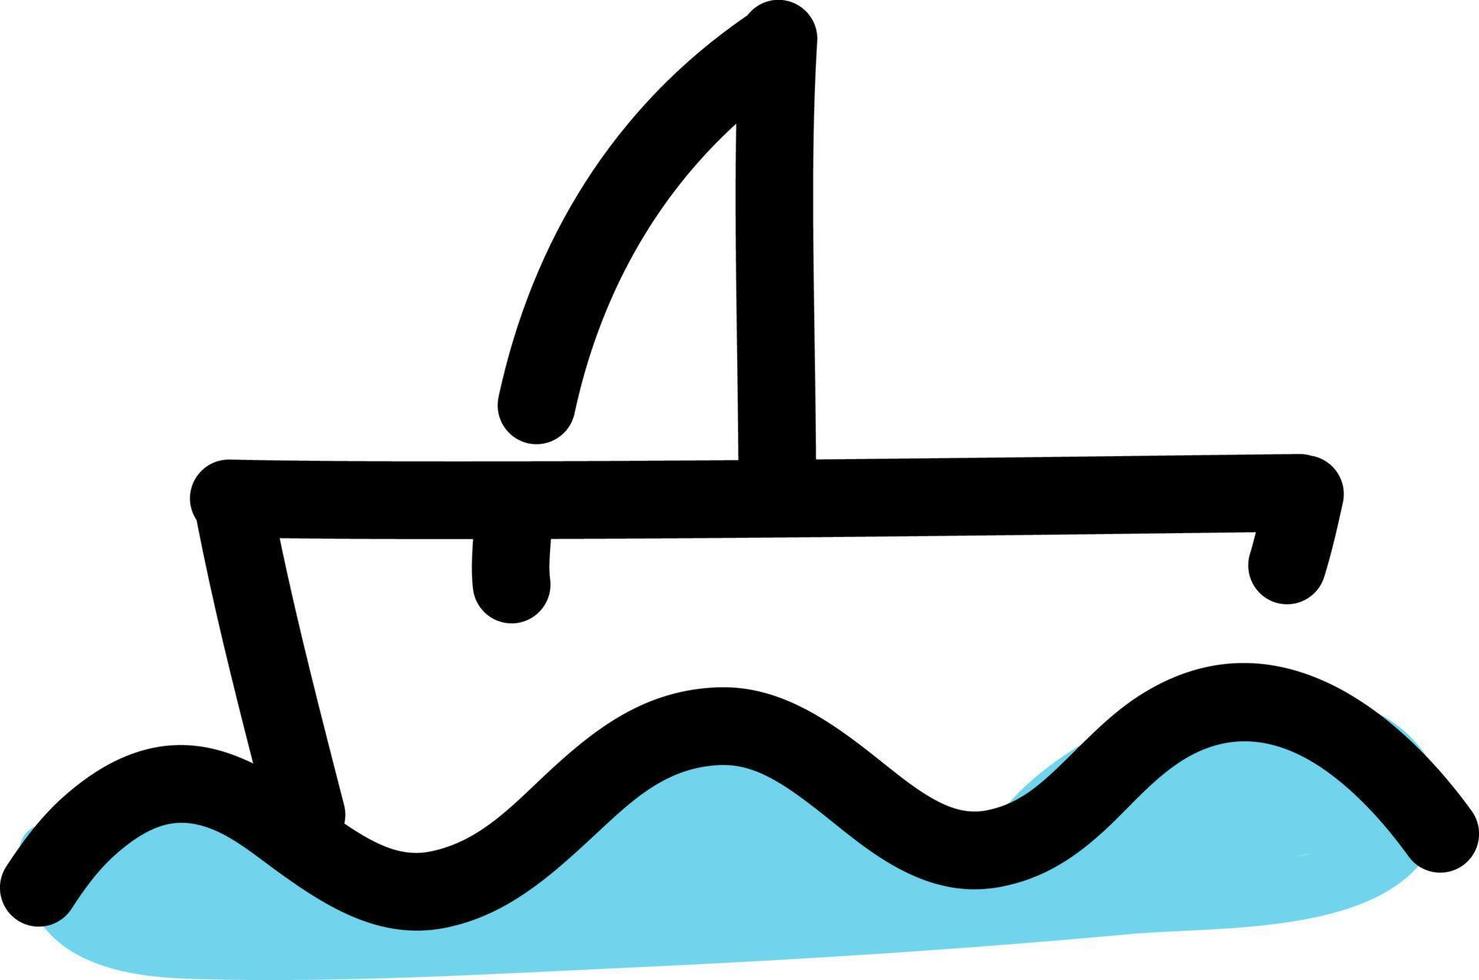 båt på vatten, illustration, vektor på en vit bakgrund